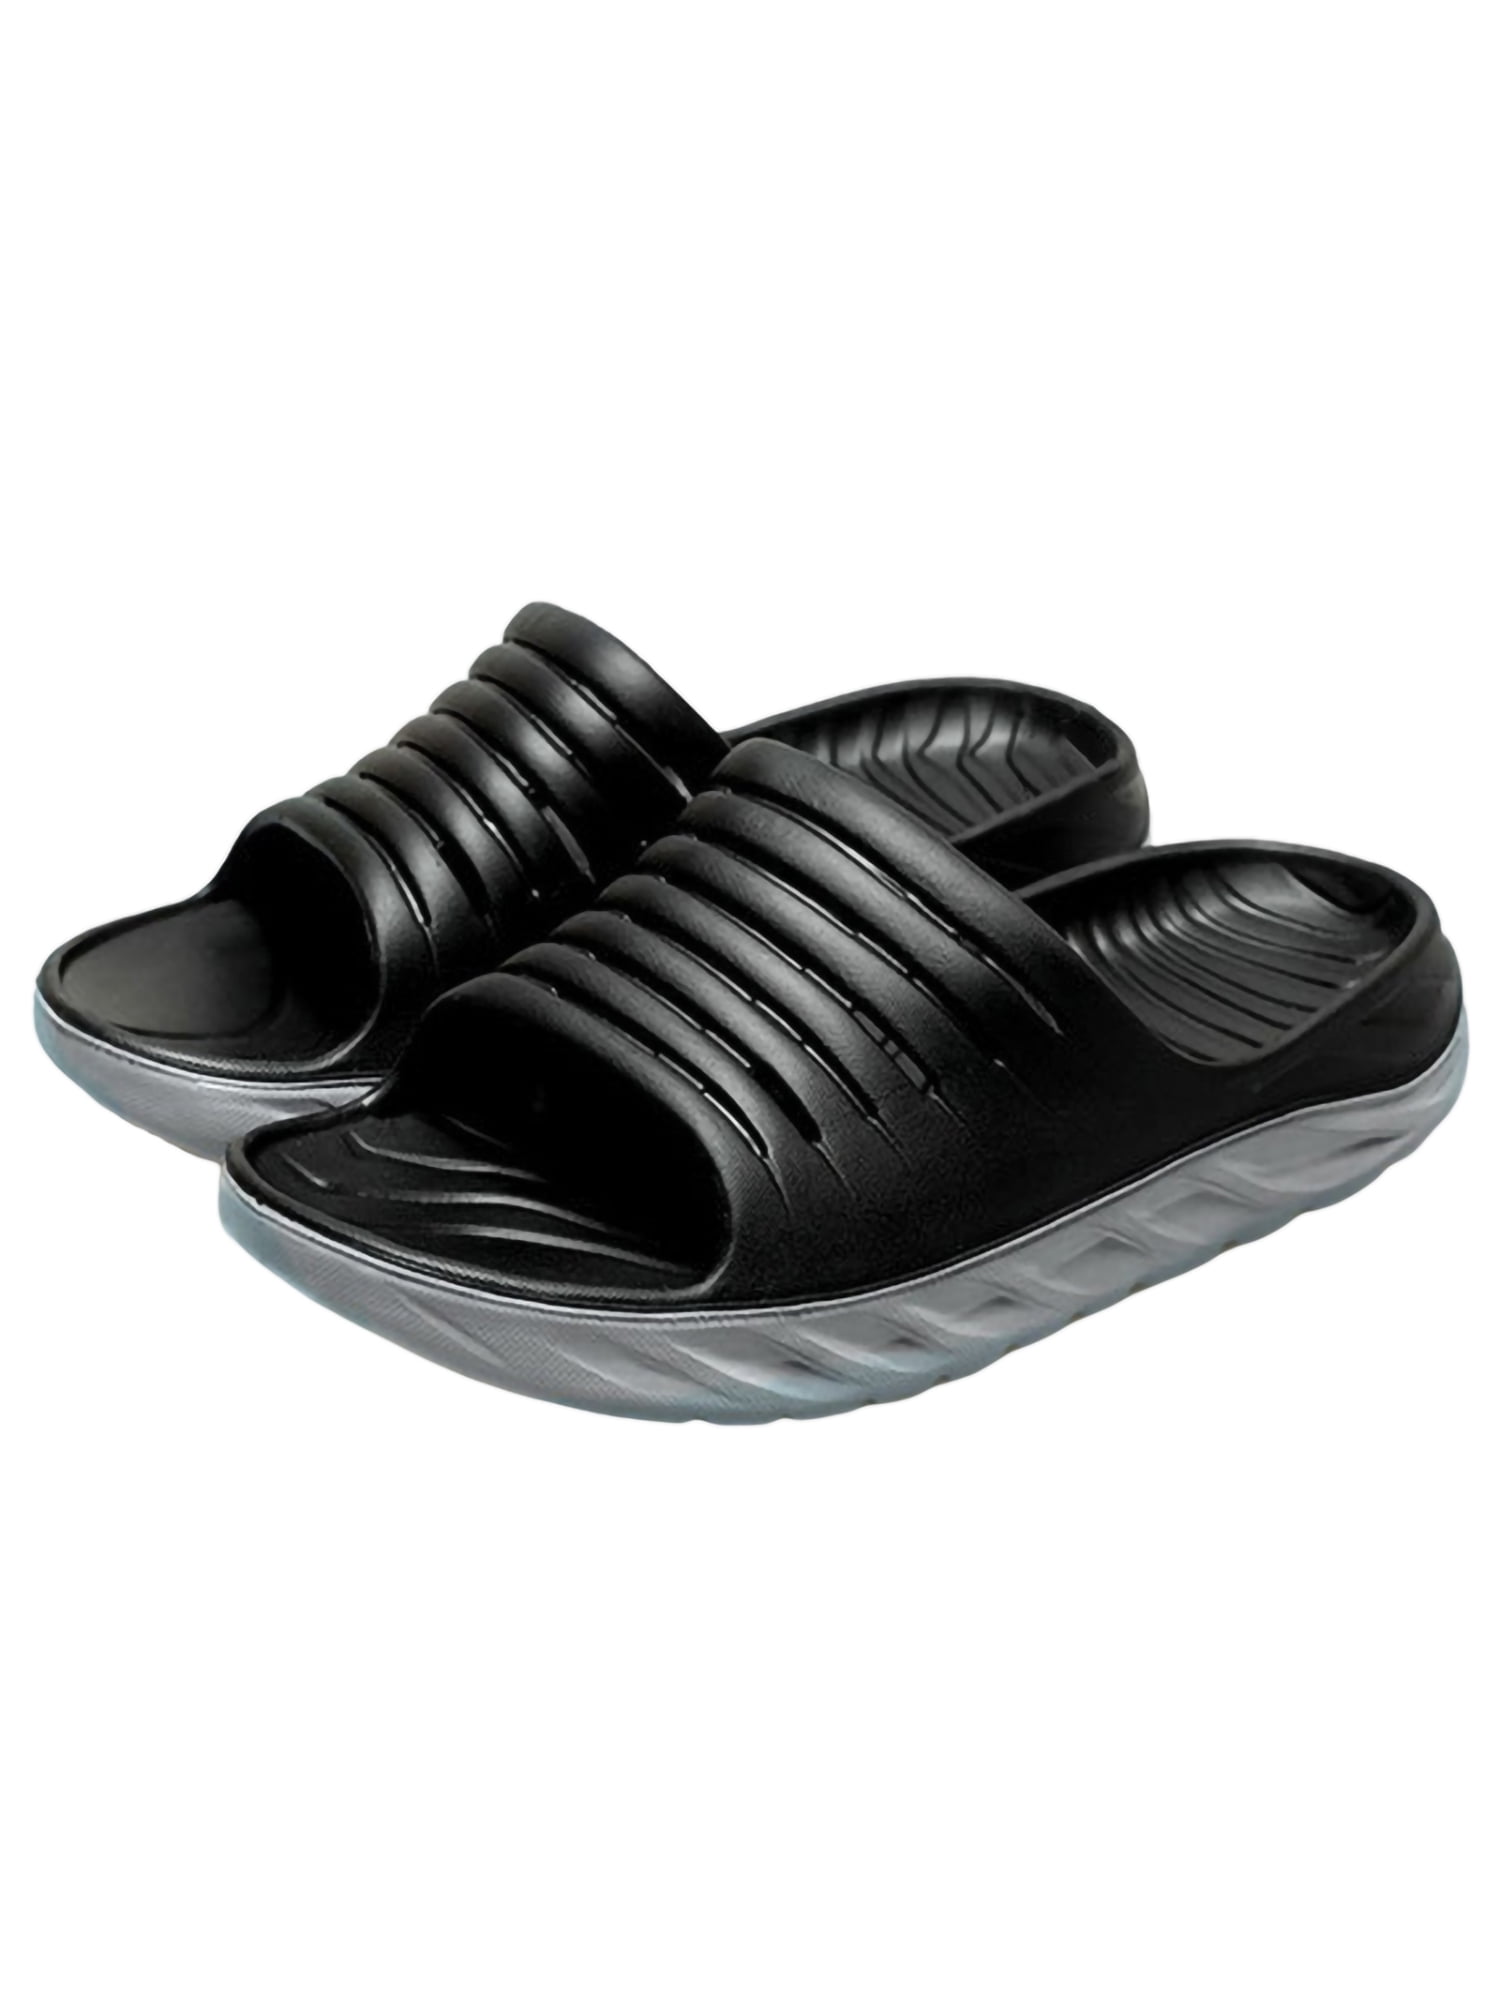 Hot Slip On Sport Slide Sandals Flip Flop Shower Shoes Slippers House Gym Mens 